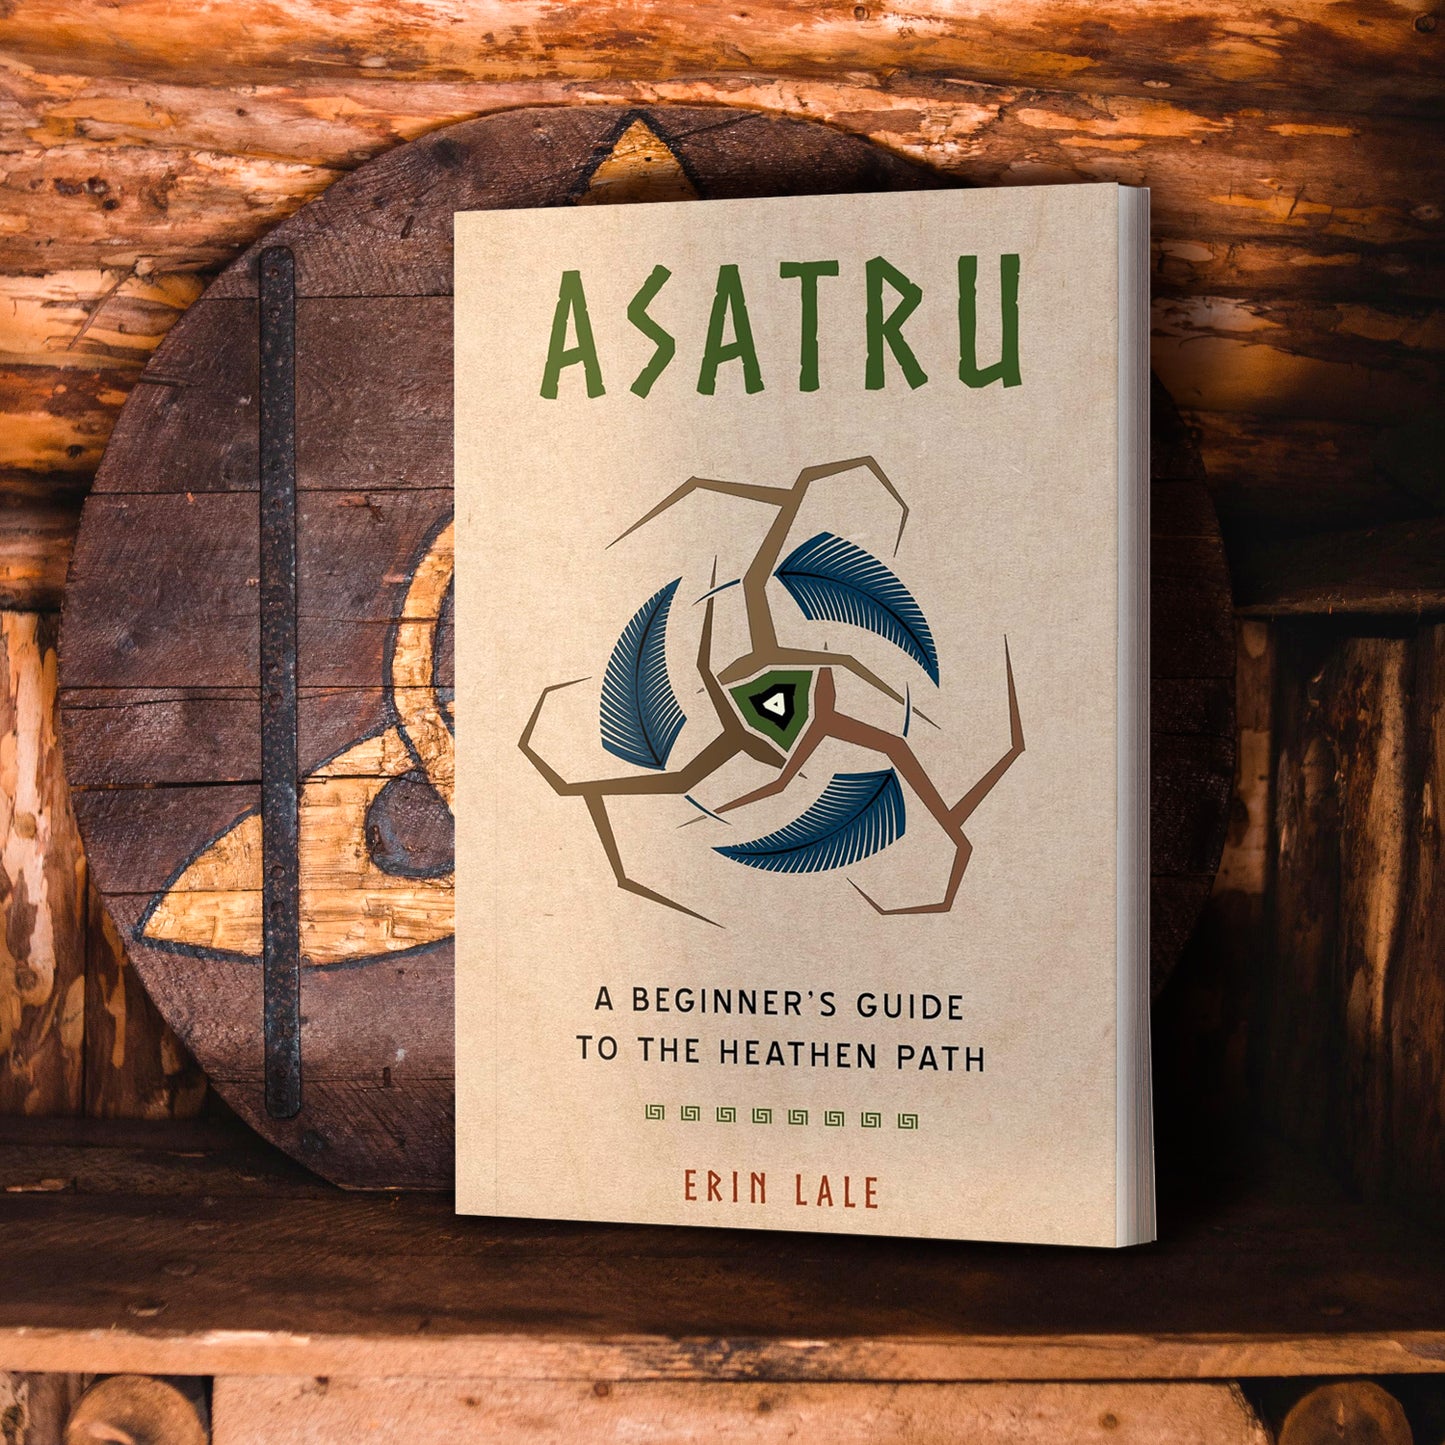 Asatru: A Beginner's Guide To The Heathen Path – Stands